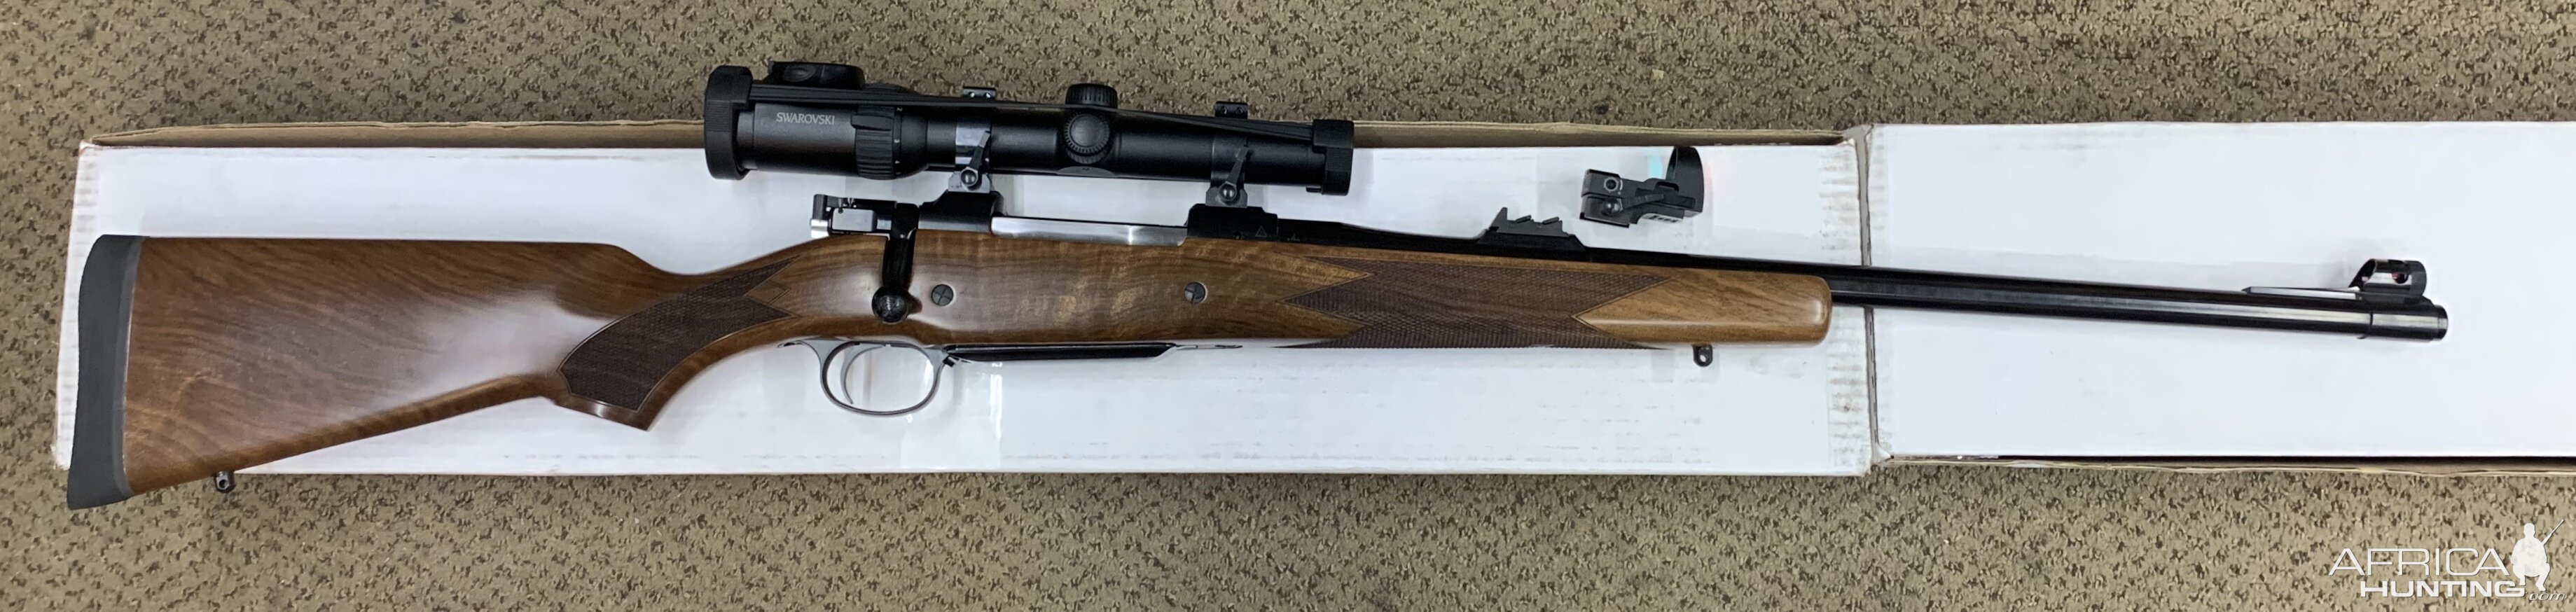 CZ 550 Rifle in 458 Lott